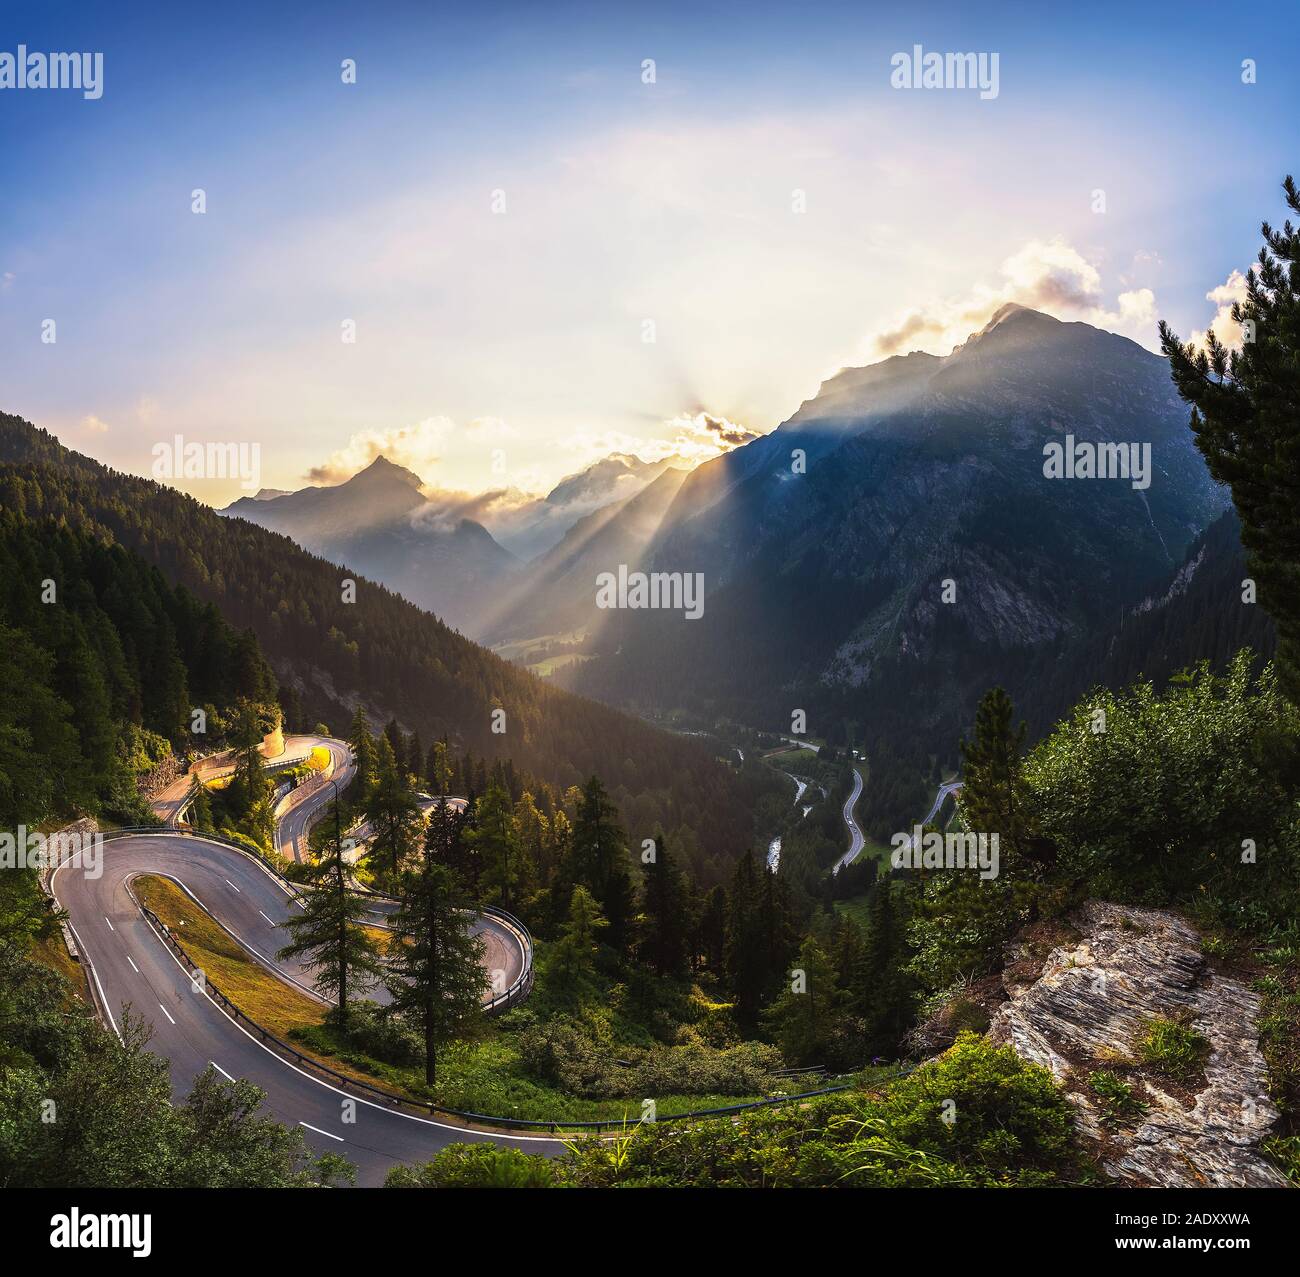 Vue aérienne du chemin du Col de Maloja en Suisse au coucher du soleil. Cette route de montagne des Alpes Suisses est situé dans les forêts denses du canton des Grisons. Hdr proc Banque D'Images